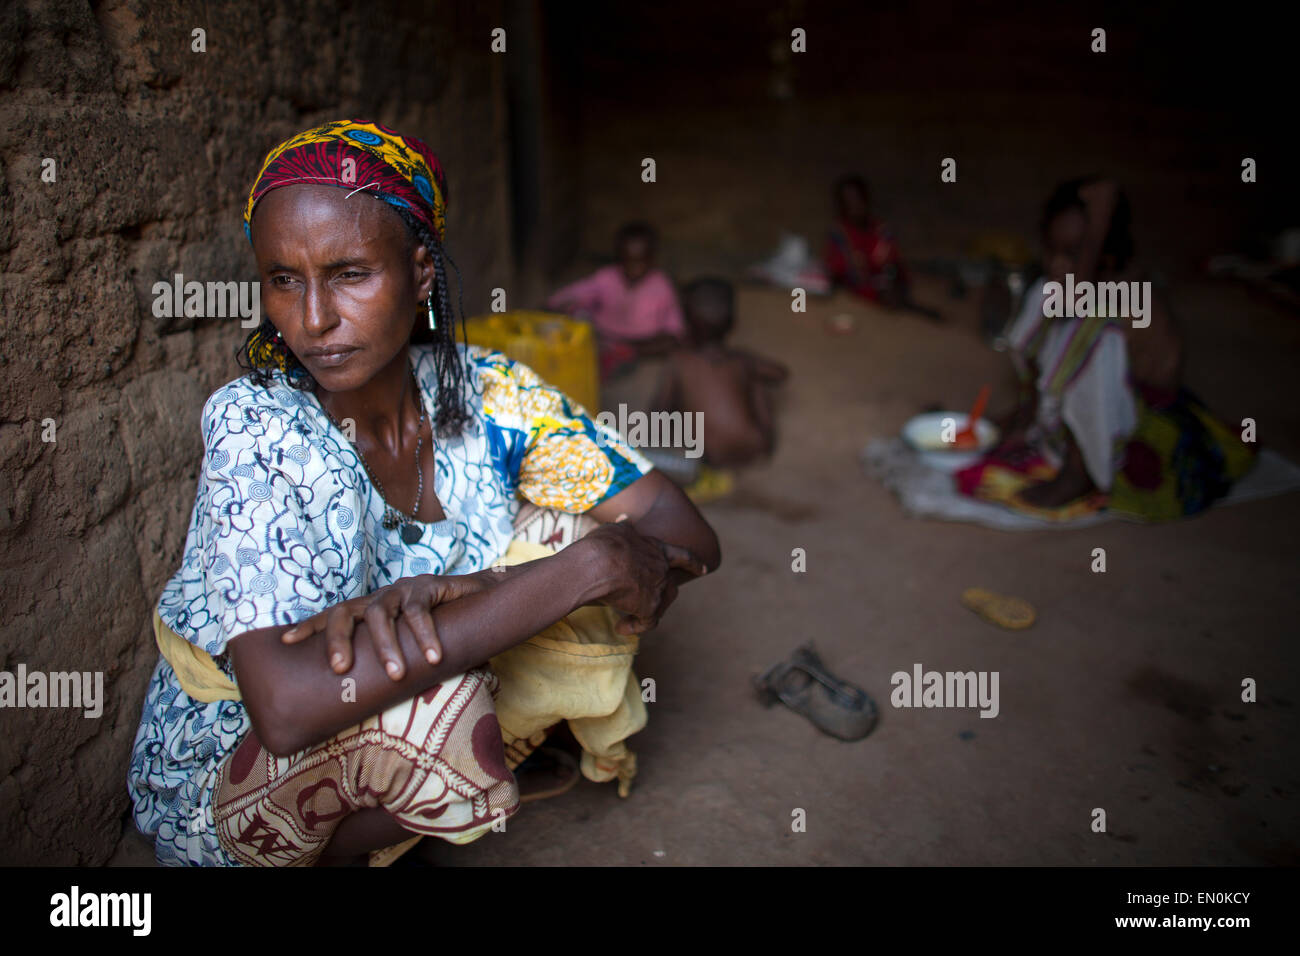 Muslimische Männer wurden von Gewalt in der Zentralafrikanischen Republik vertrieben. Sie fanden Zuflucht in und rund um die Moschee. Viele Menschen sind krank und verpassen Gesundheitsversorgung Stockfoto